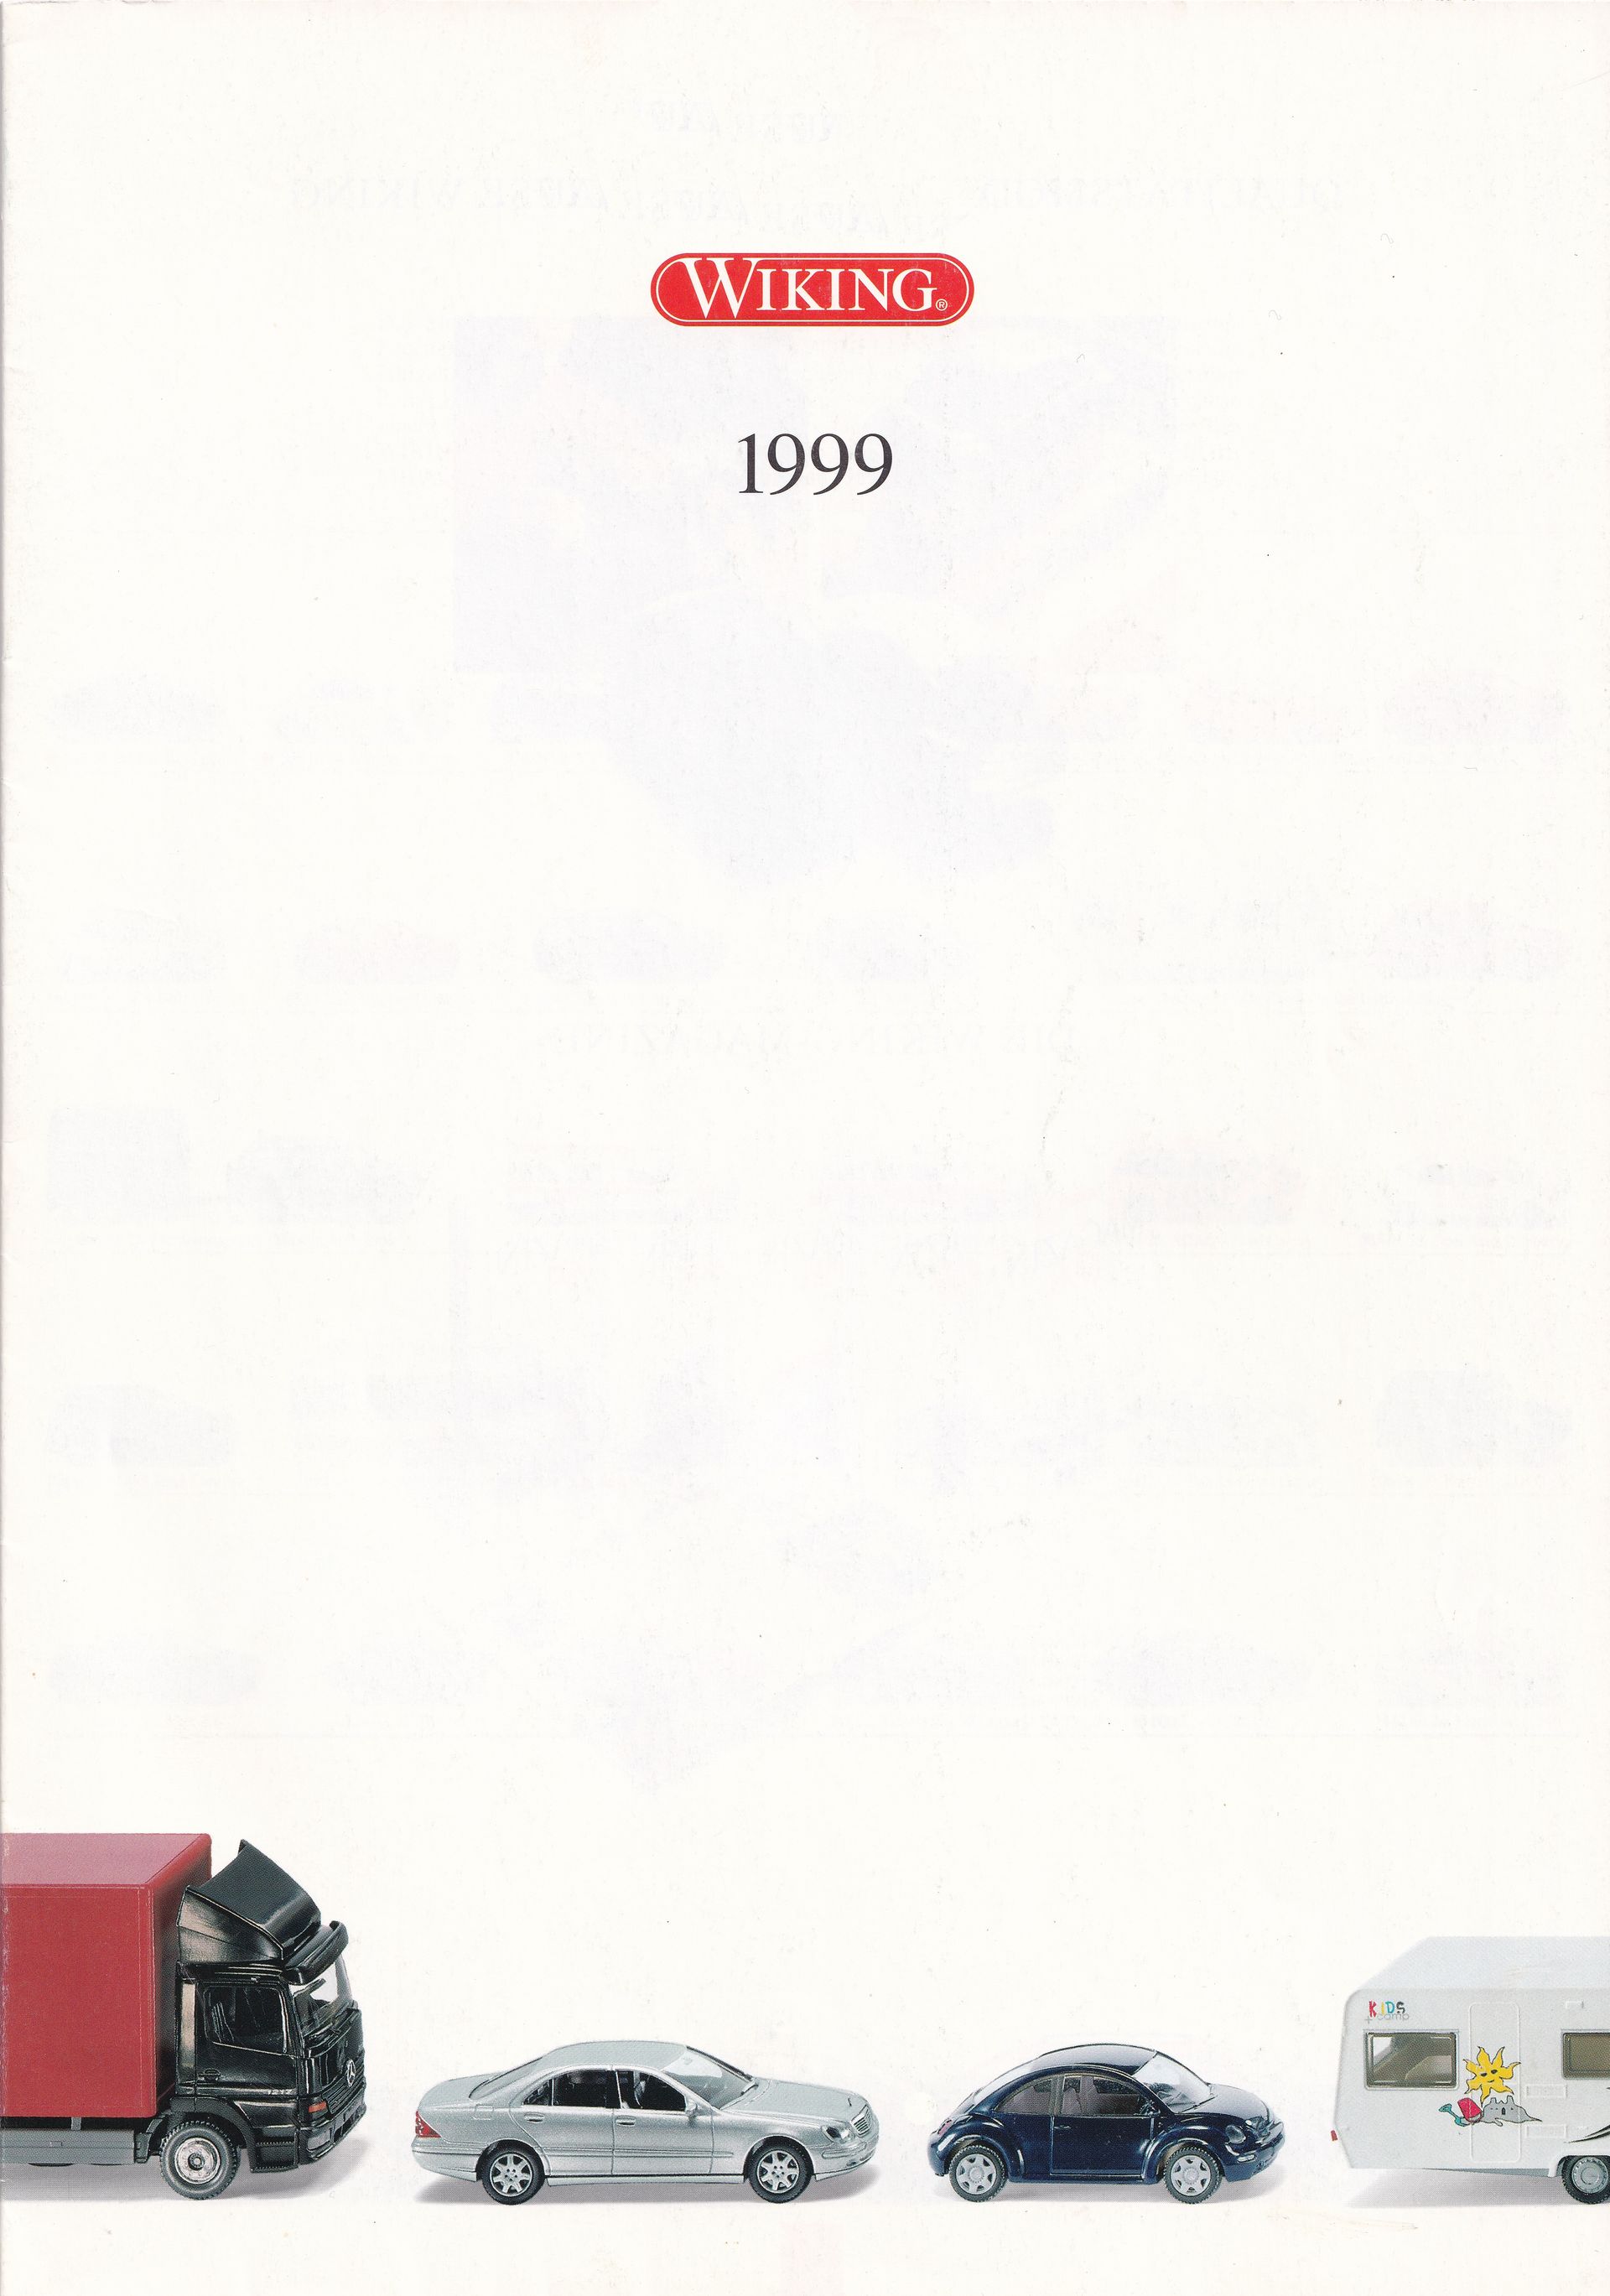 Wiking Catalogue 1999